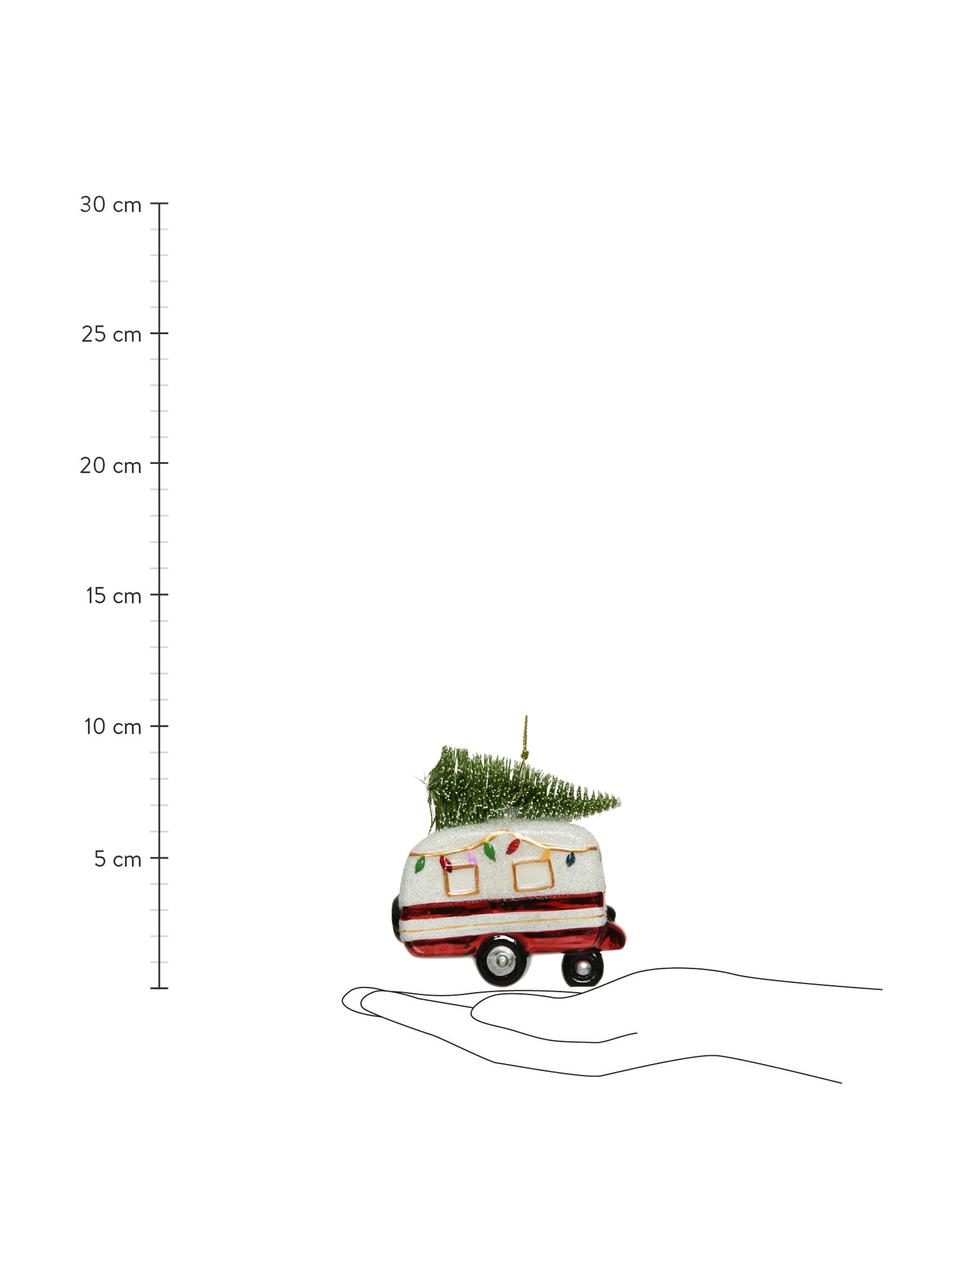 Kerstboomhanger Wagen H 10 cm, Wit, meerkleurig, B 9 x H 10 cm